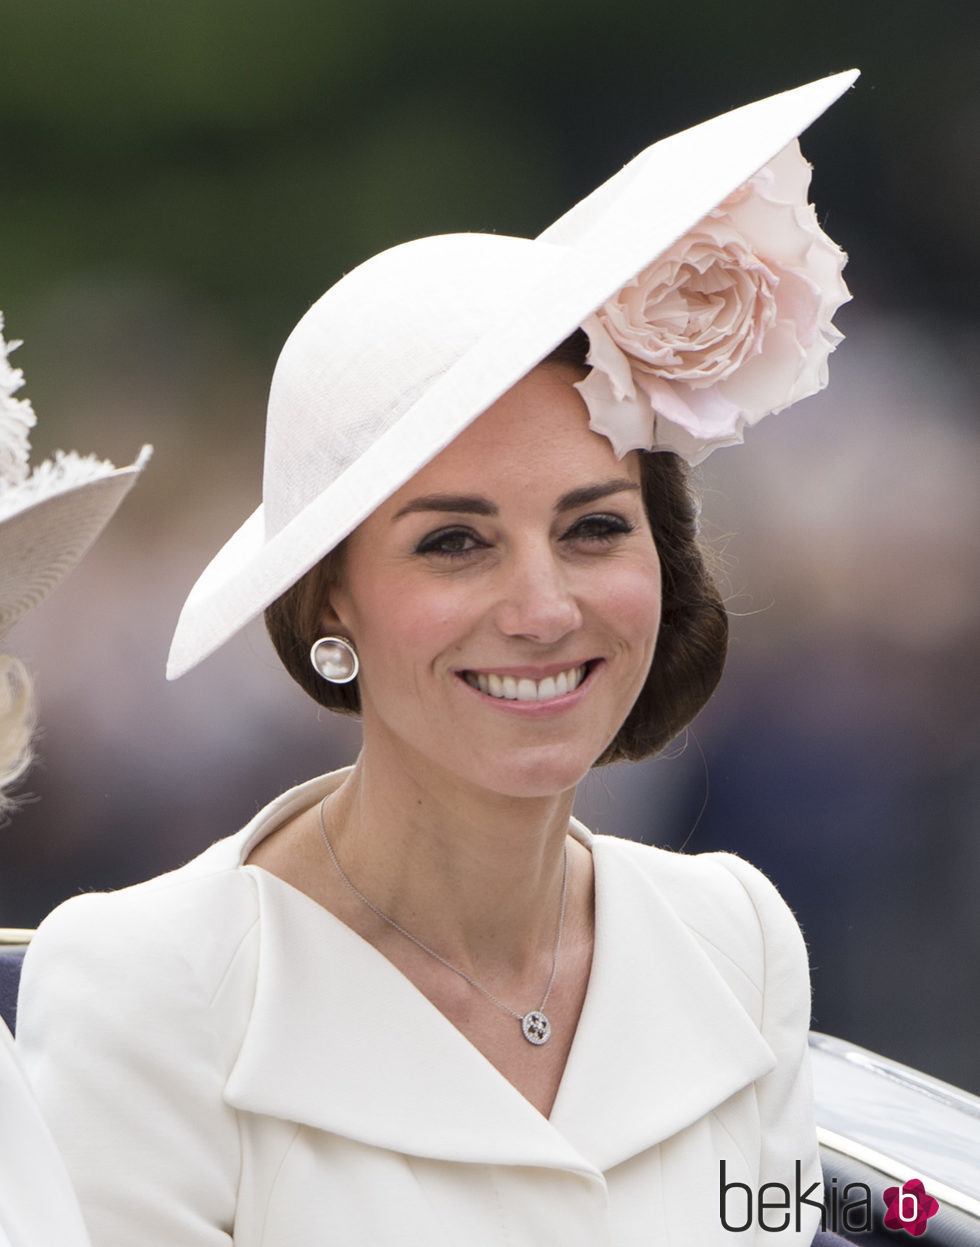 Kate Middleton con un tocado en rosa palo floral